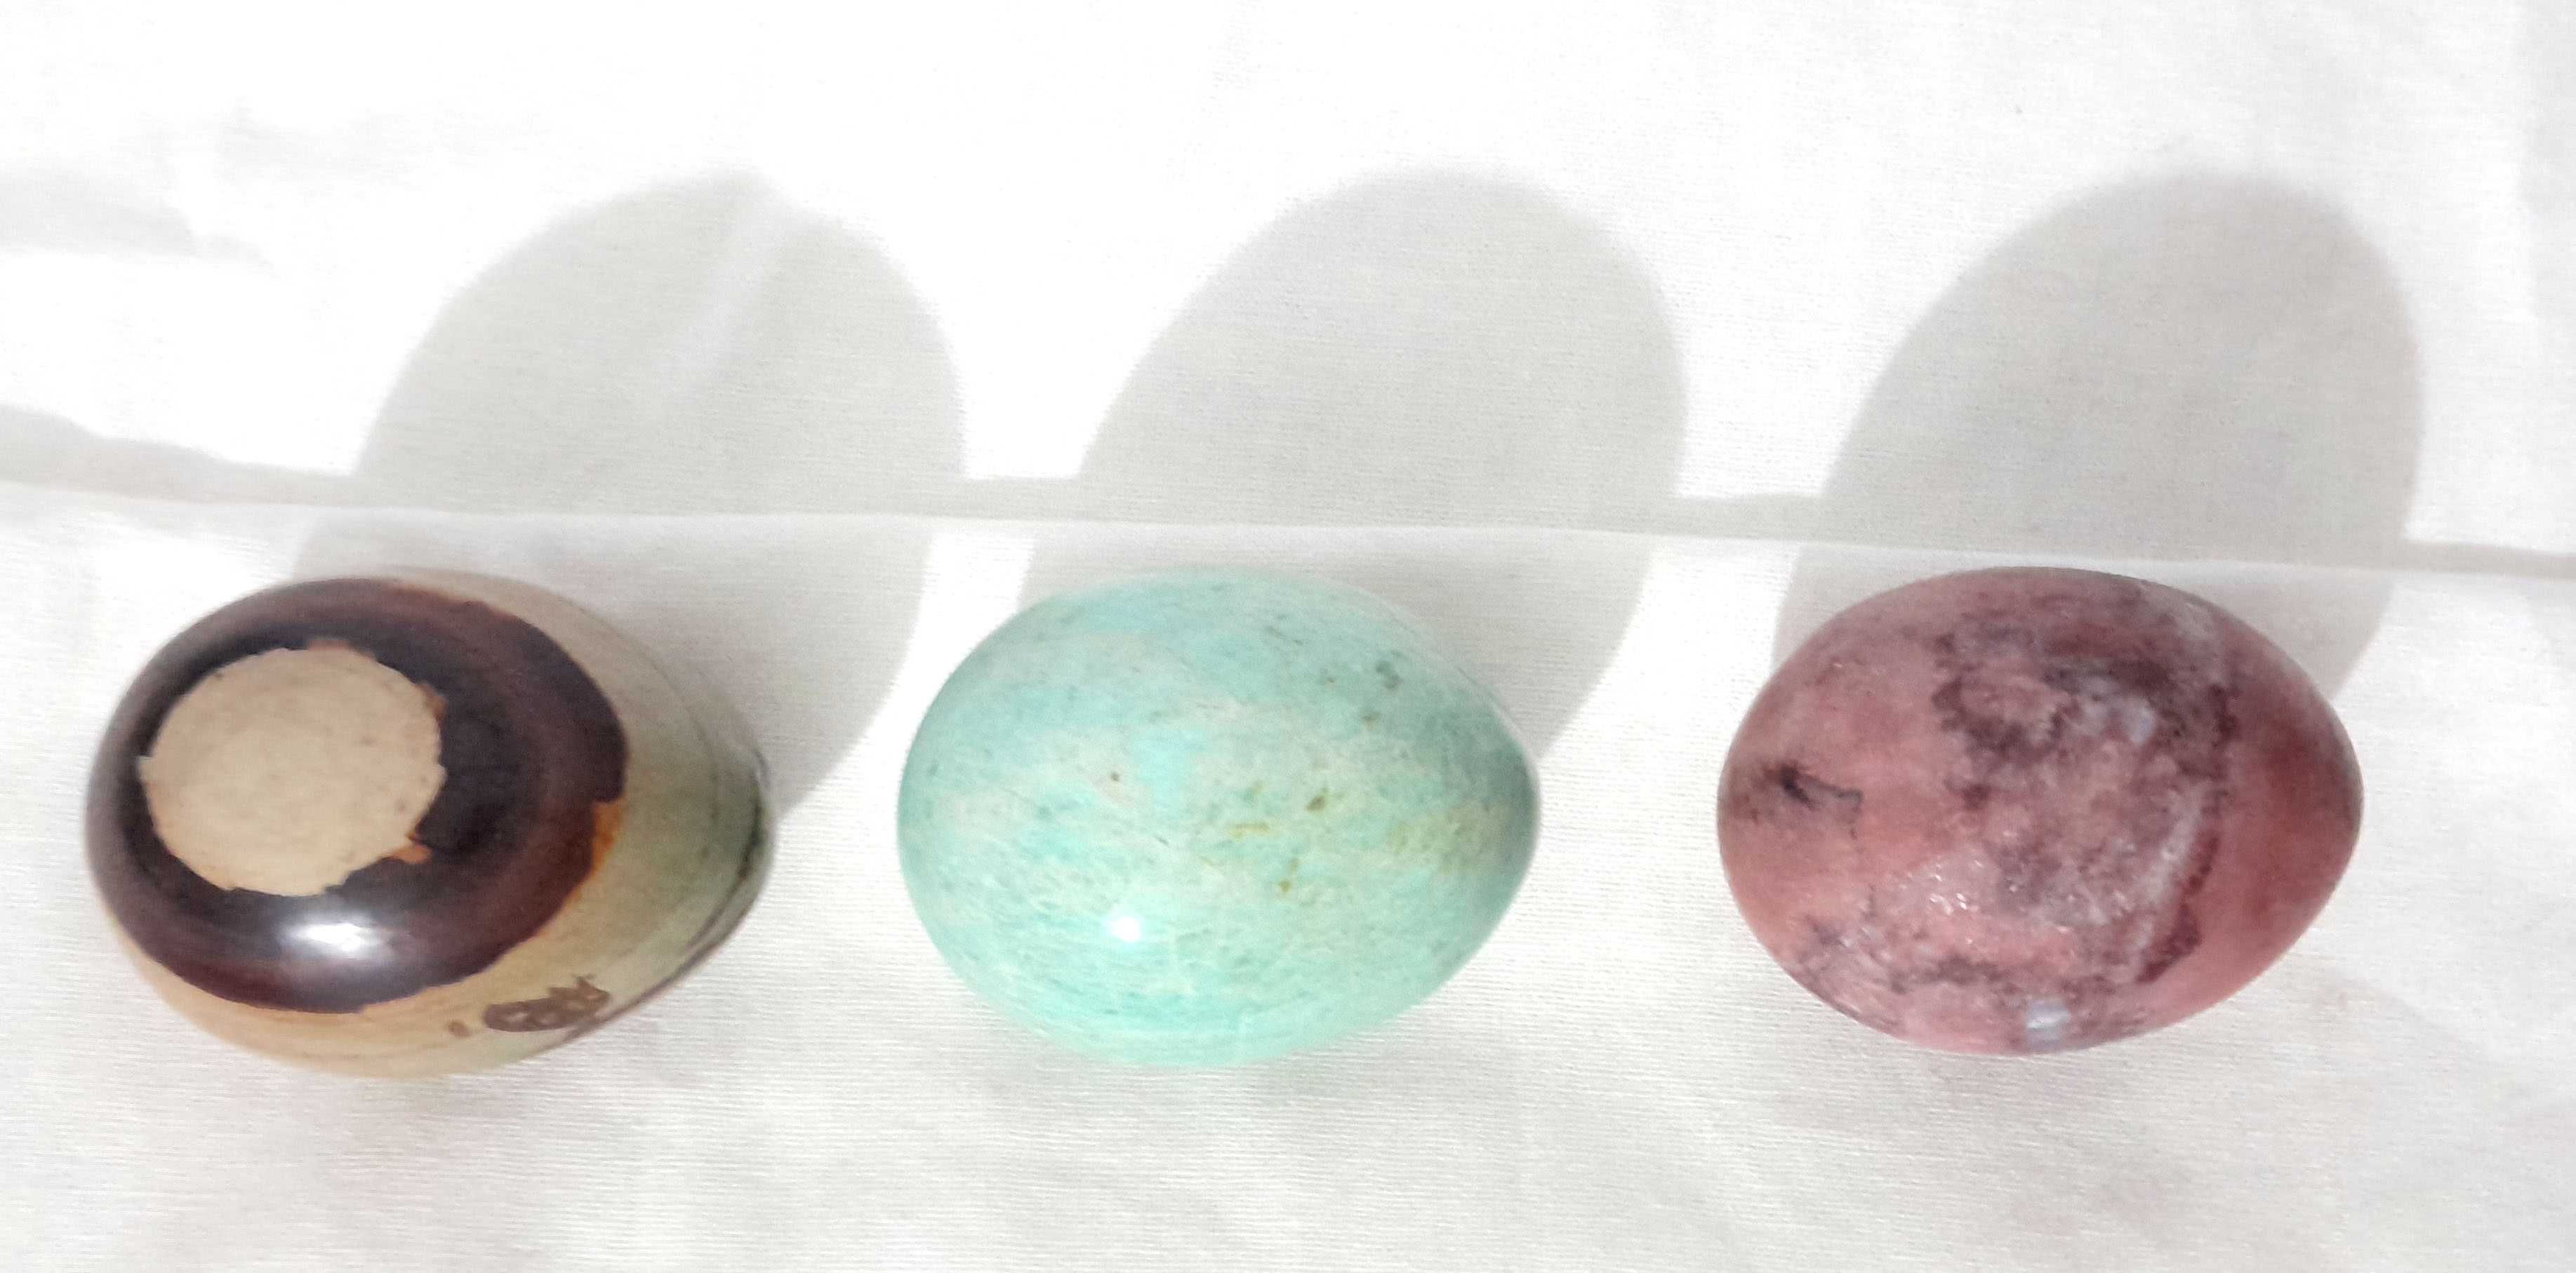 Ovos em pedra natural de colecção (década de 90)